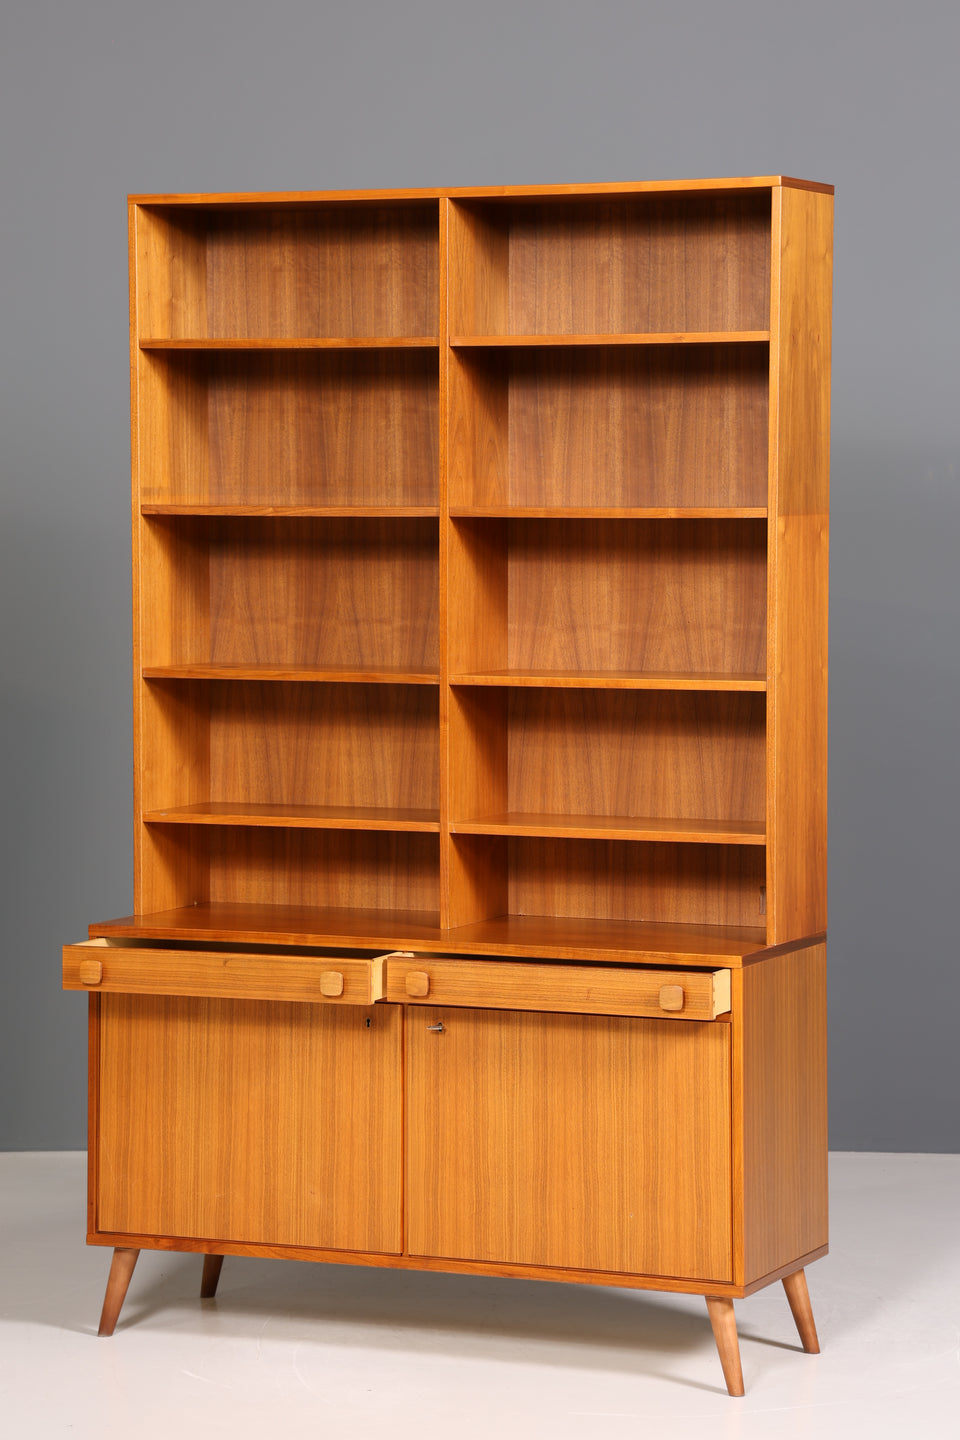 Stilvolles Mid Century Regal "Ulferts- Made in Sweden" echt Holz Schrank Retro Kommode Vintage Bücherregal 60er Jahre